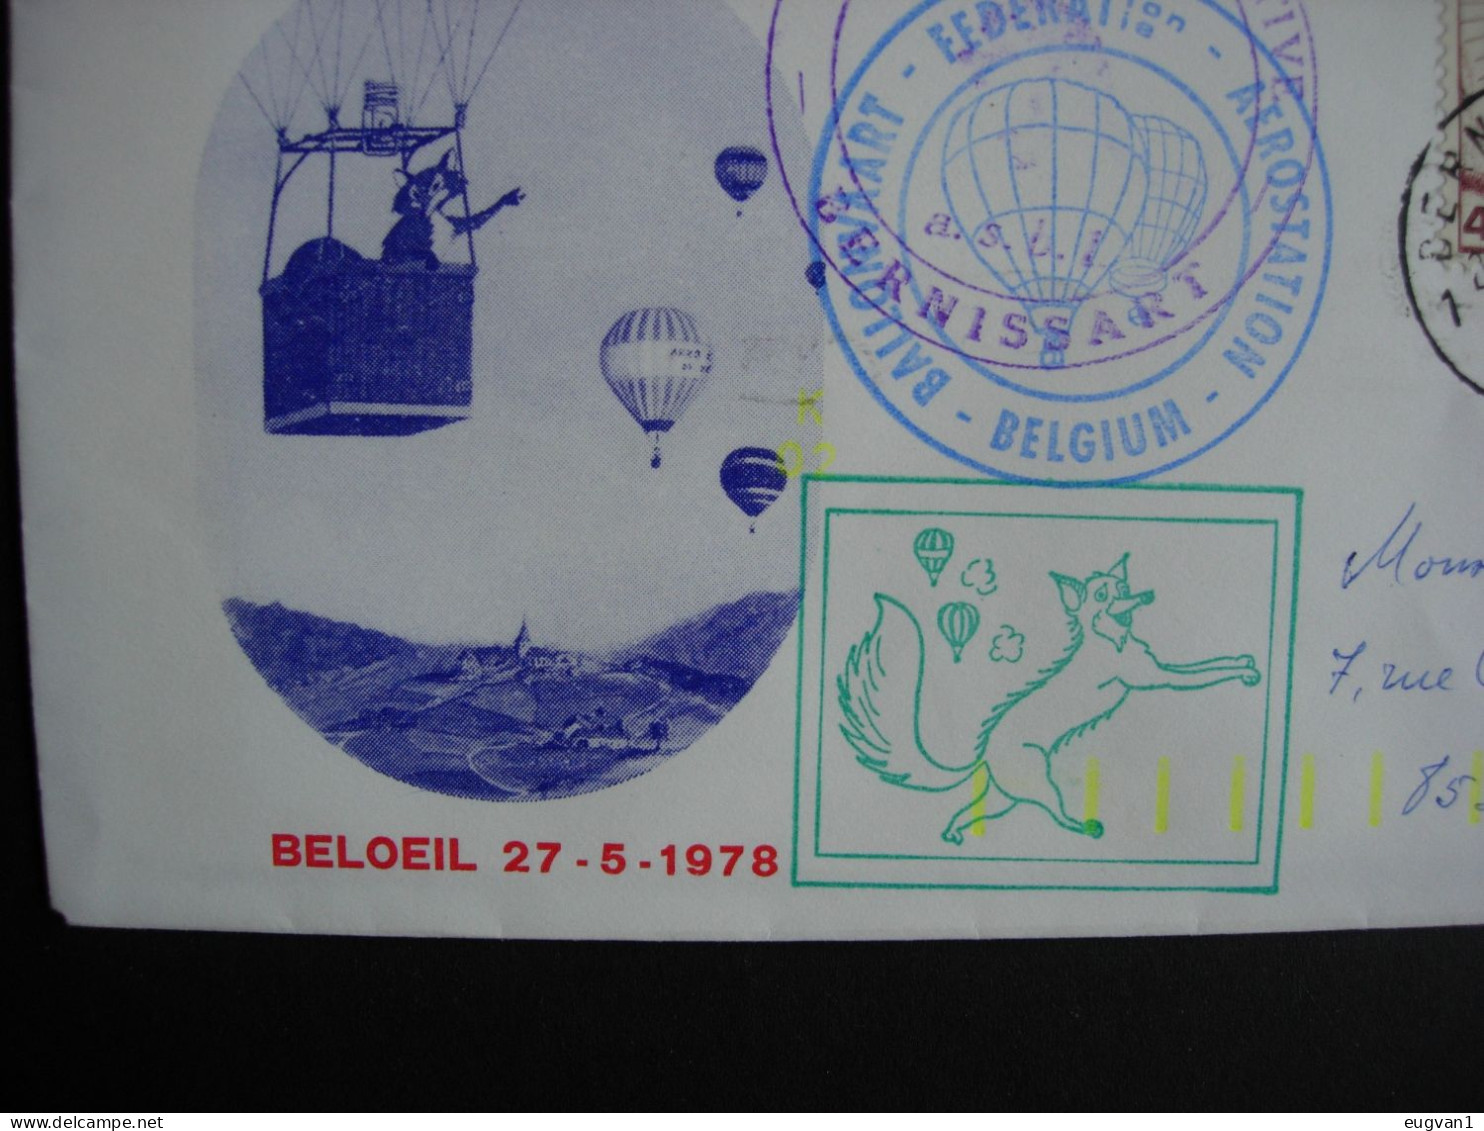 Belgique. Challenge Prince De Ligne. Vol Par Montgolfière Beloeil 27.5.1978. Atterrissage Bernissart. - Fesselballons